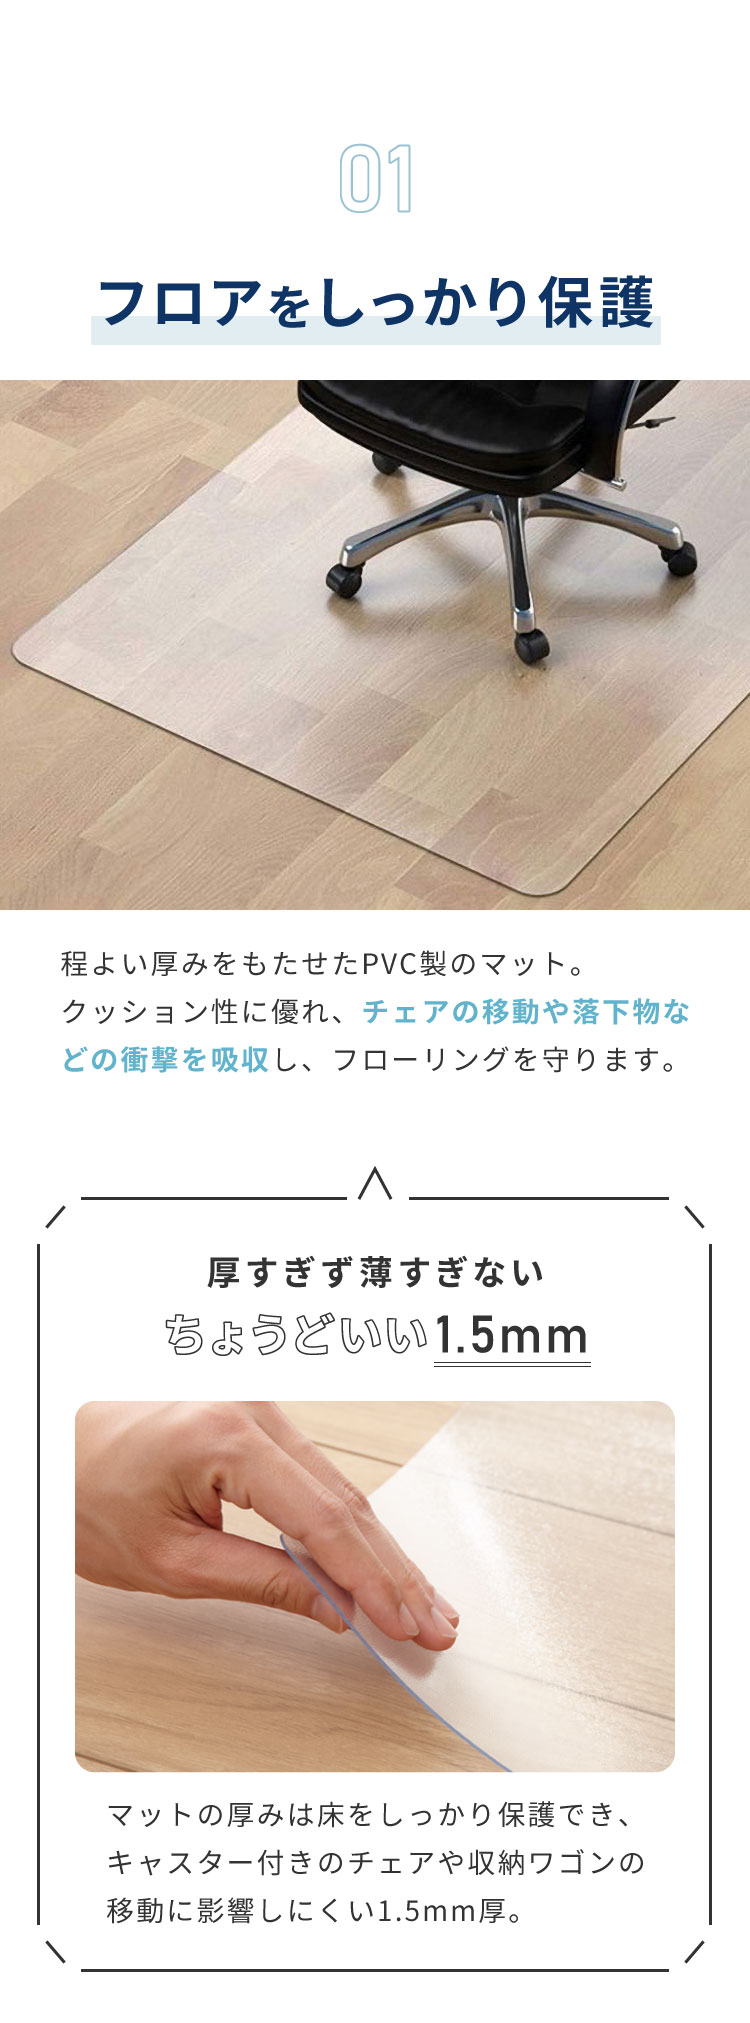 チェアマット 凸形 長方形 110cm×120cm 透明 クリアマット オフィスマット ソフトタイプ 床暖房対応 無地 床 保護 フローリング  フローリングマット